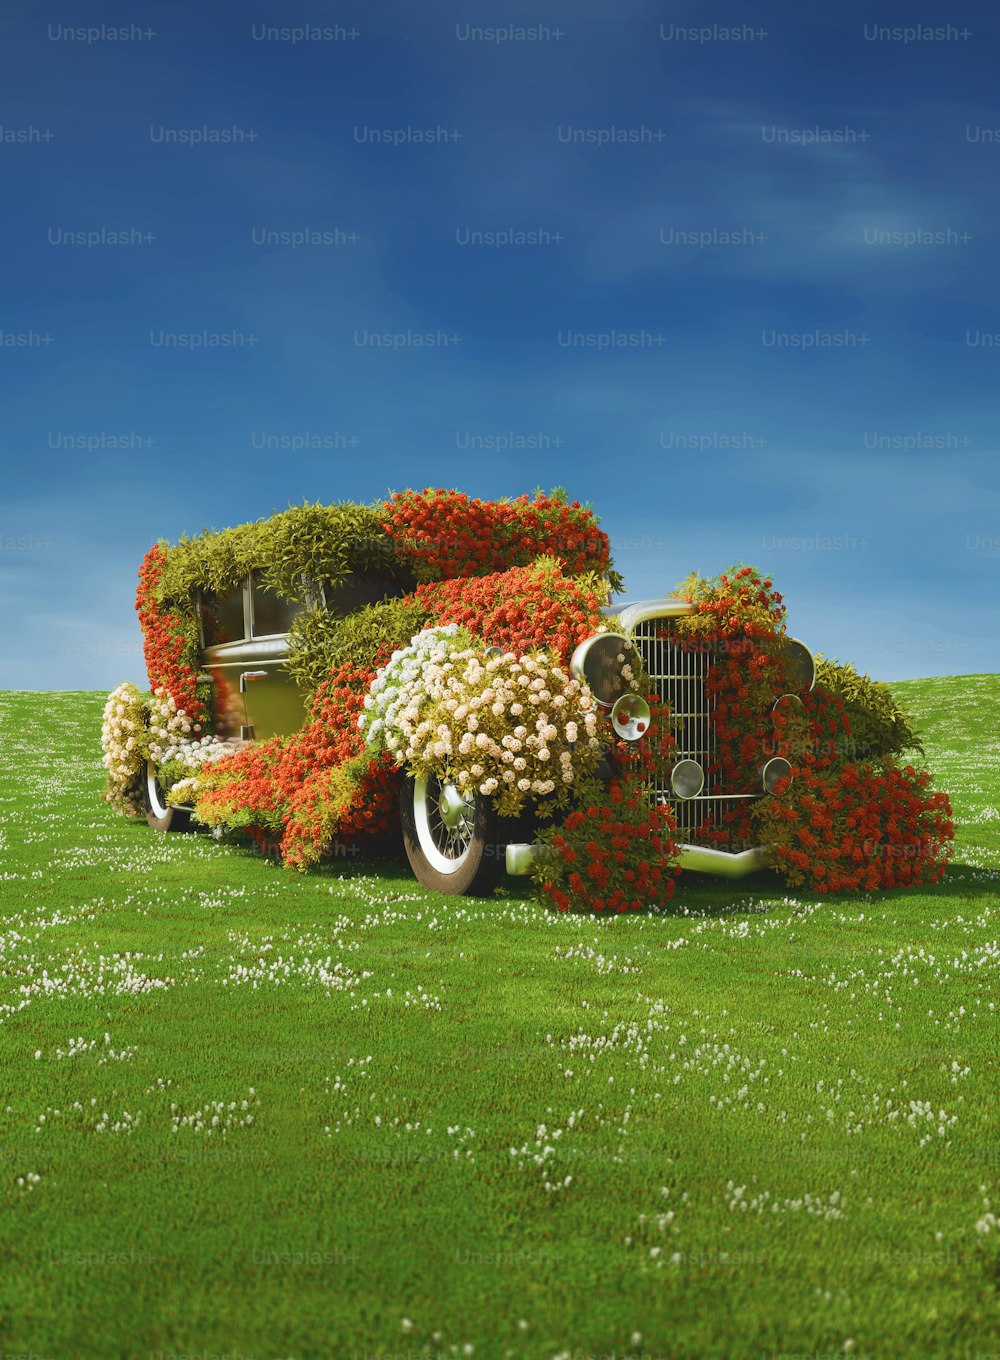 Ein mit Blumen bedecktes Auto, das auf einem saftig grünen Feld sitzt